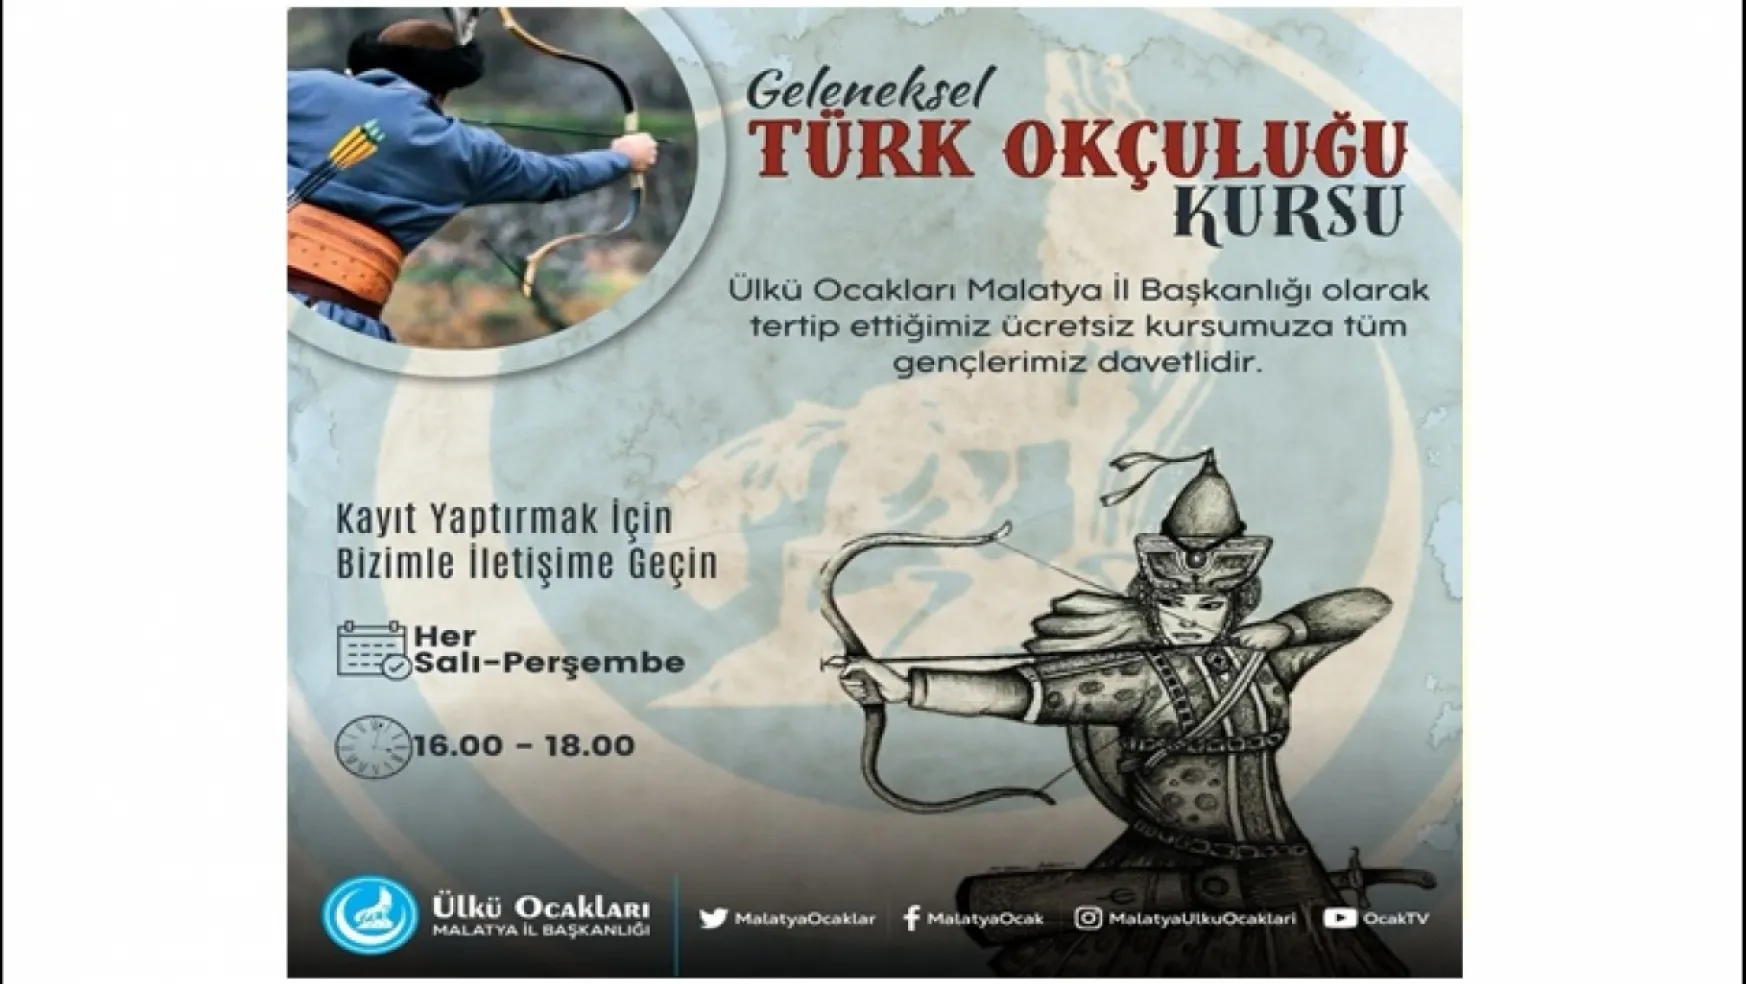 Ülkü Ocakları'ndan Geleneksel Türk Okçuluğu Kursu